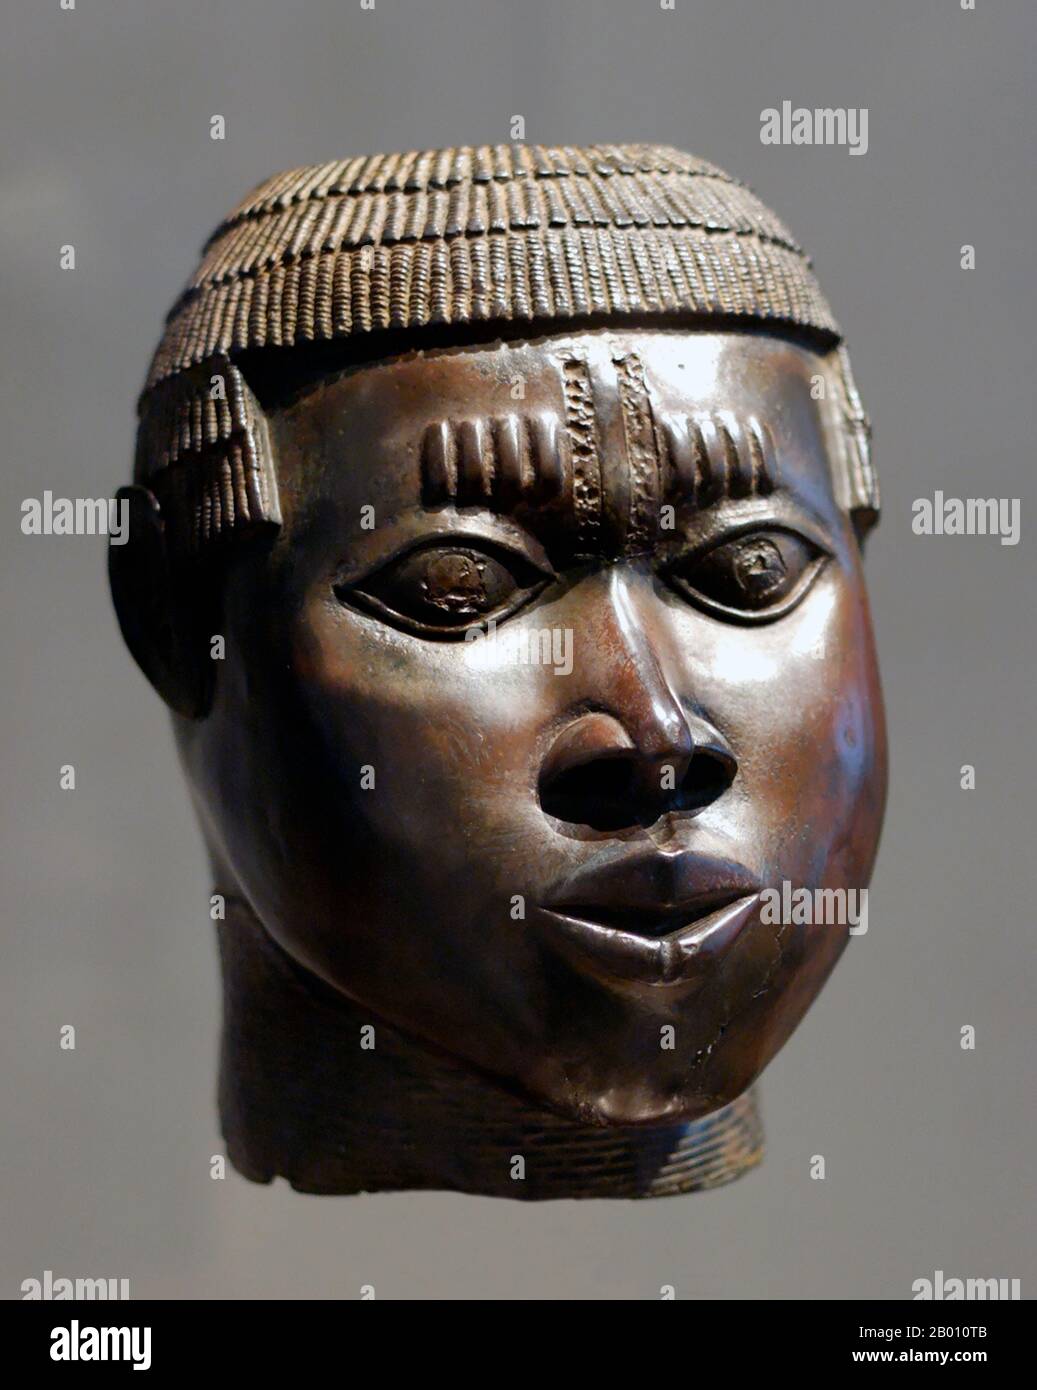 Nigeria: Skulptur des Königreichs Benin. Verlorenes Wachs gegossene Bronze, Nigeria, Ende 15th-Mitte 16th Jahrhundert. Das Benin-Reich (1440–1897) war ein vorkolonialer afrikanischer Staat im heutigen Nigeria. Es ist nicht zu verwechseln mit dem modernen Land Benin (und früher Dahomey genannt). Stockfoto